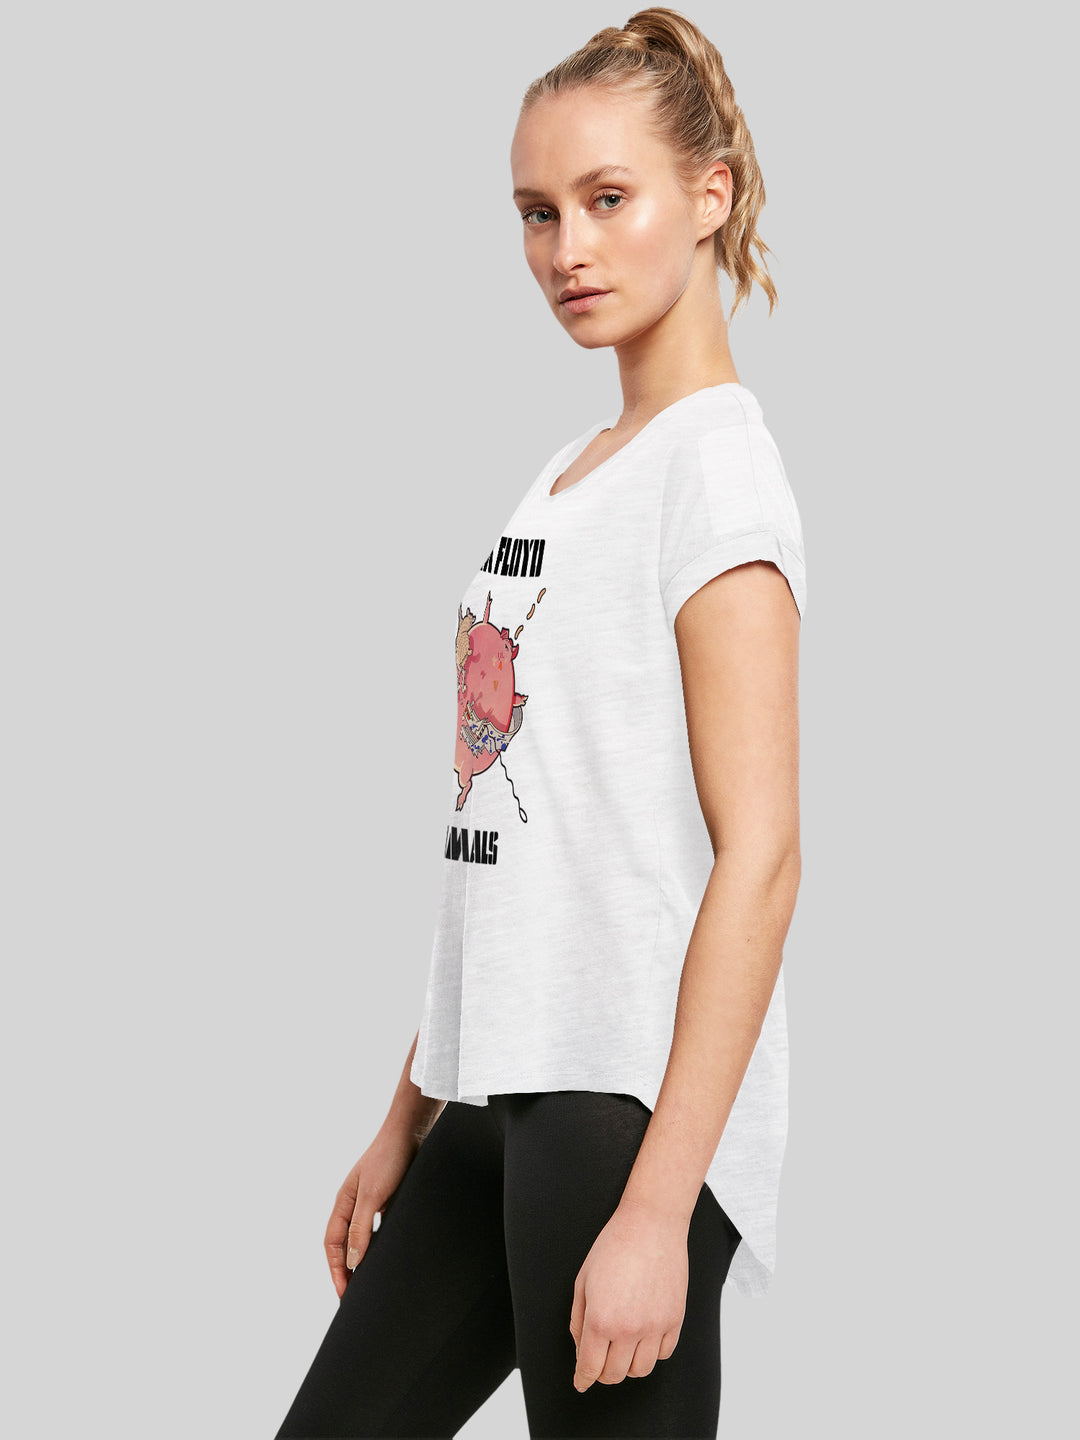 Pink Floyd T-Shirt | Fat Pig | Premium Long Damen T Shirt